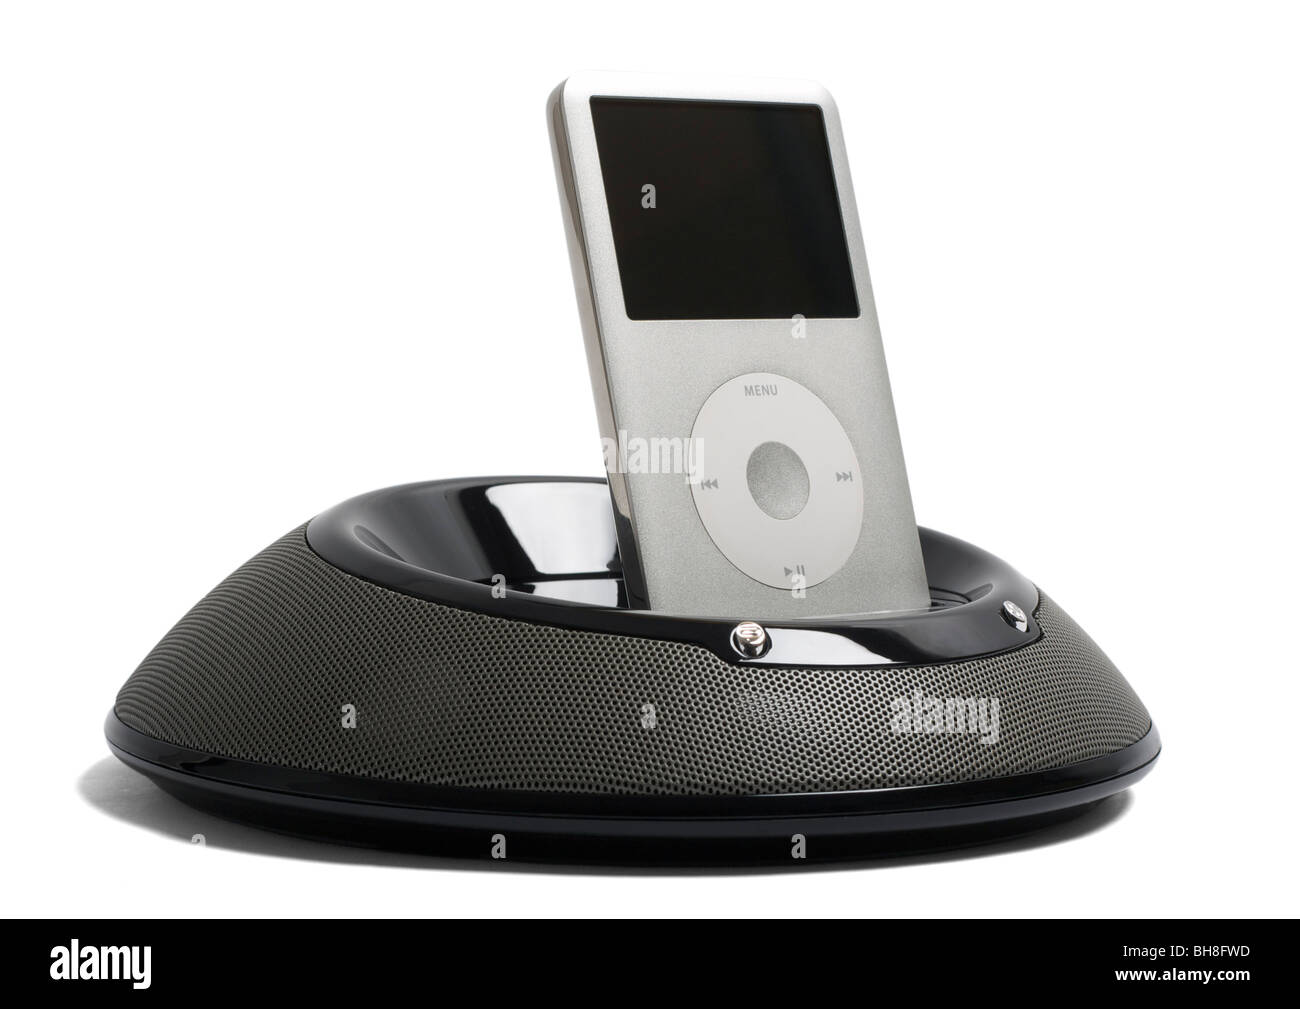 iPod Lautsprecher dock auf weißem Hintergrund Stockfotografie - Alamy